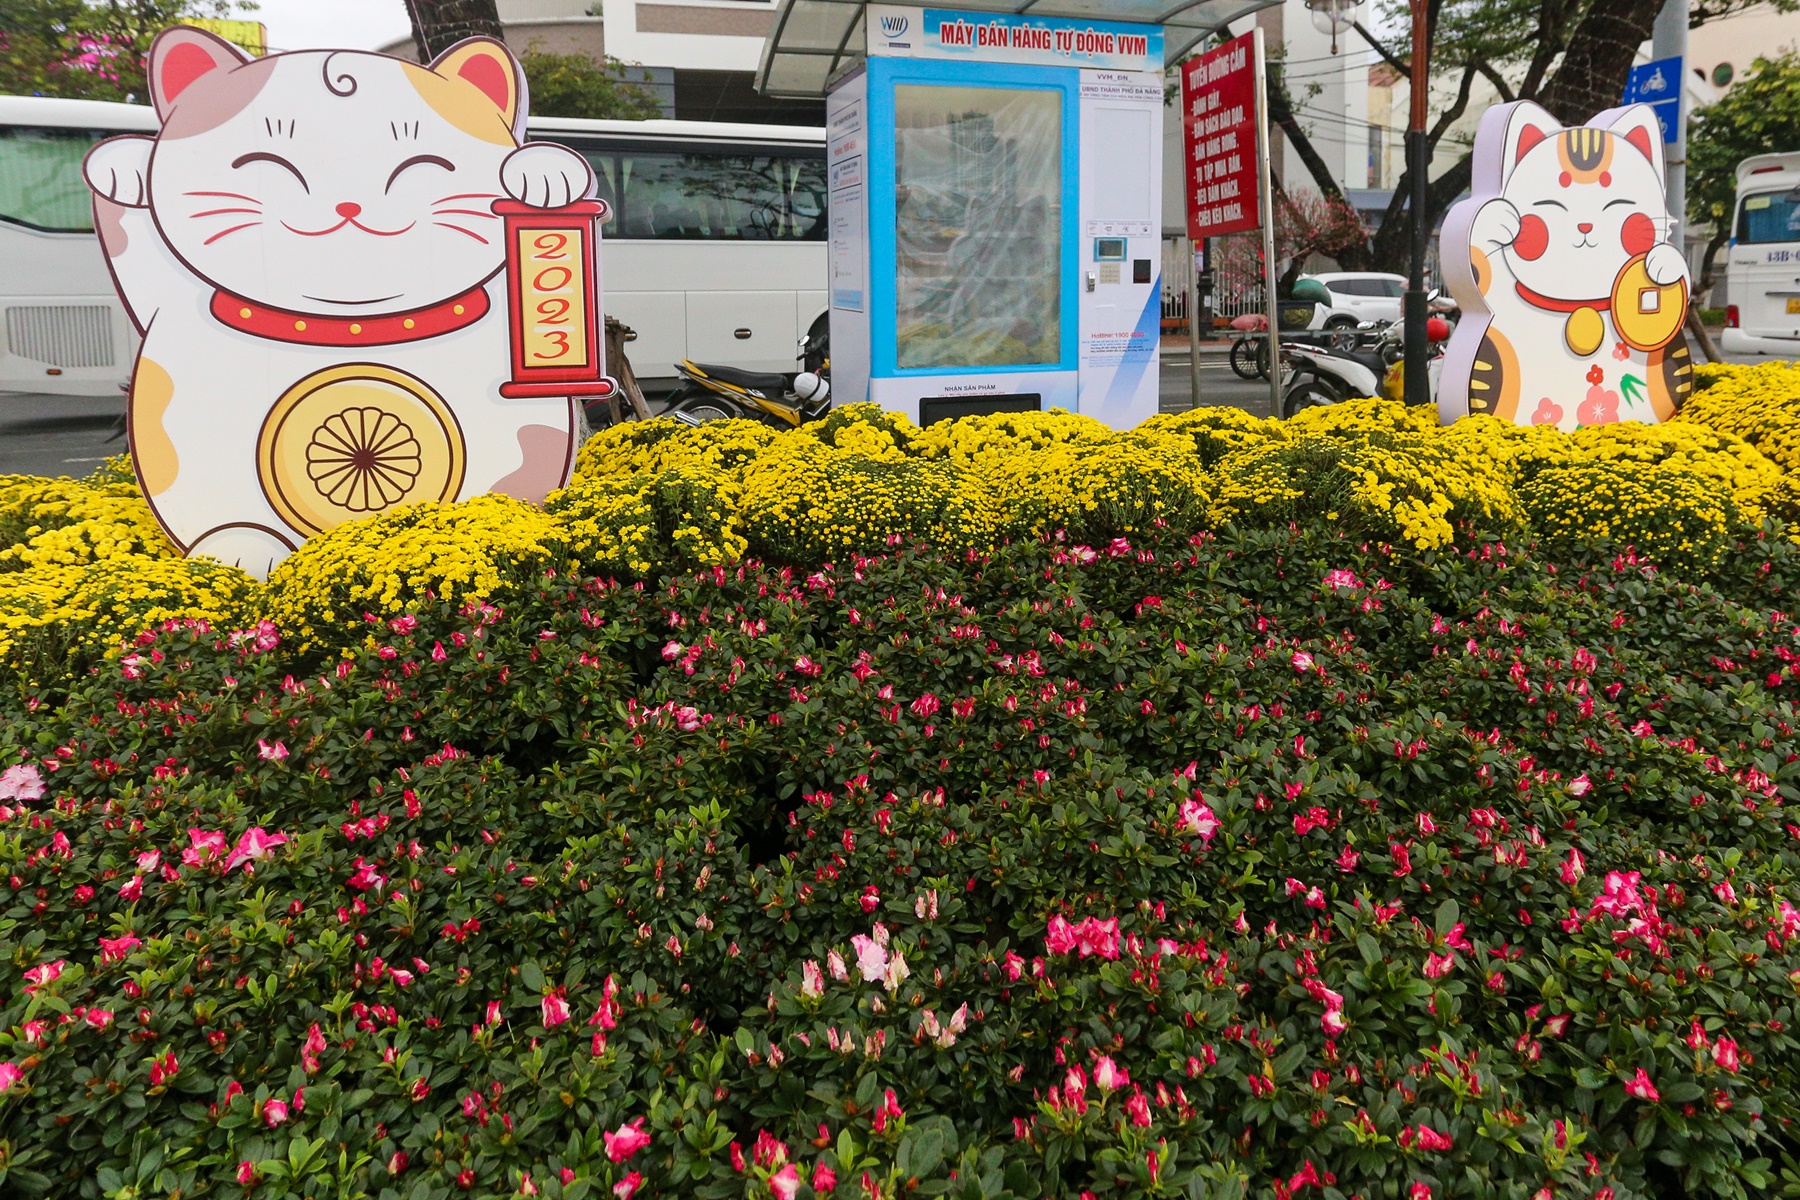 Lộ diện đàn linh vật mèo đủ sắc thái tại đường hoa Xuân Đà Nẵng - Ảnh 17.